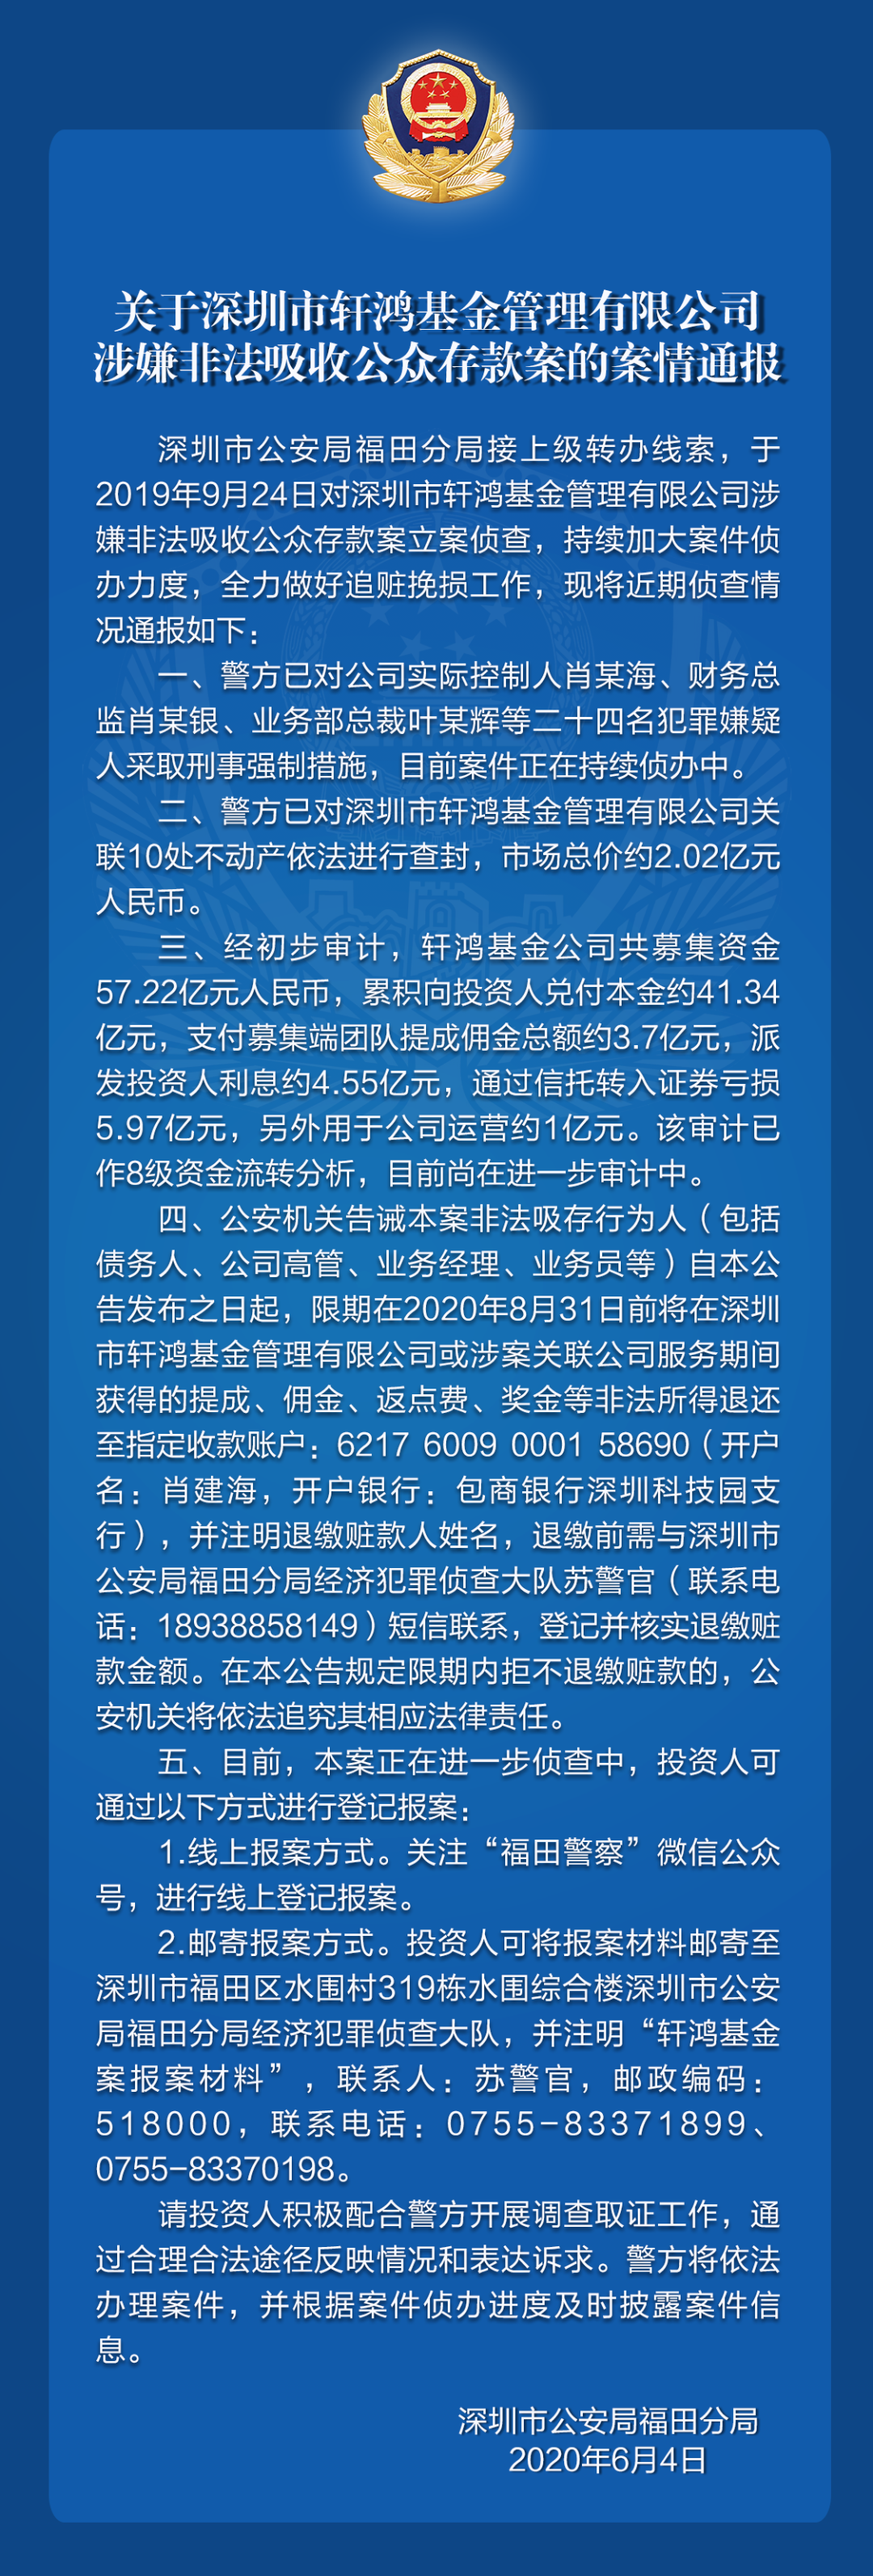 关于深圳市轩鸿基金管理有限公司涉嫌非法吸收公众存款案的案情通报